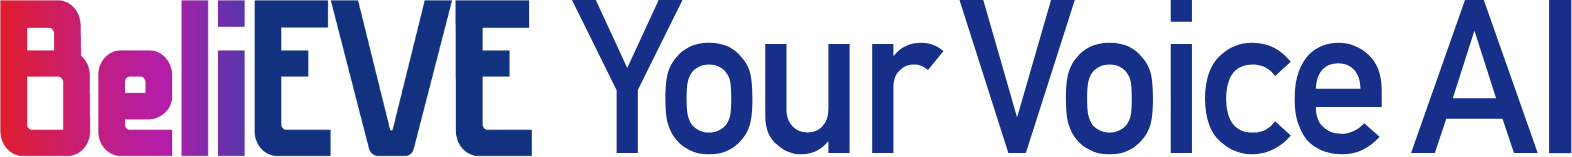 ビリーブユアボイスAIのロゴ